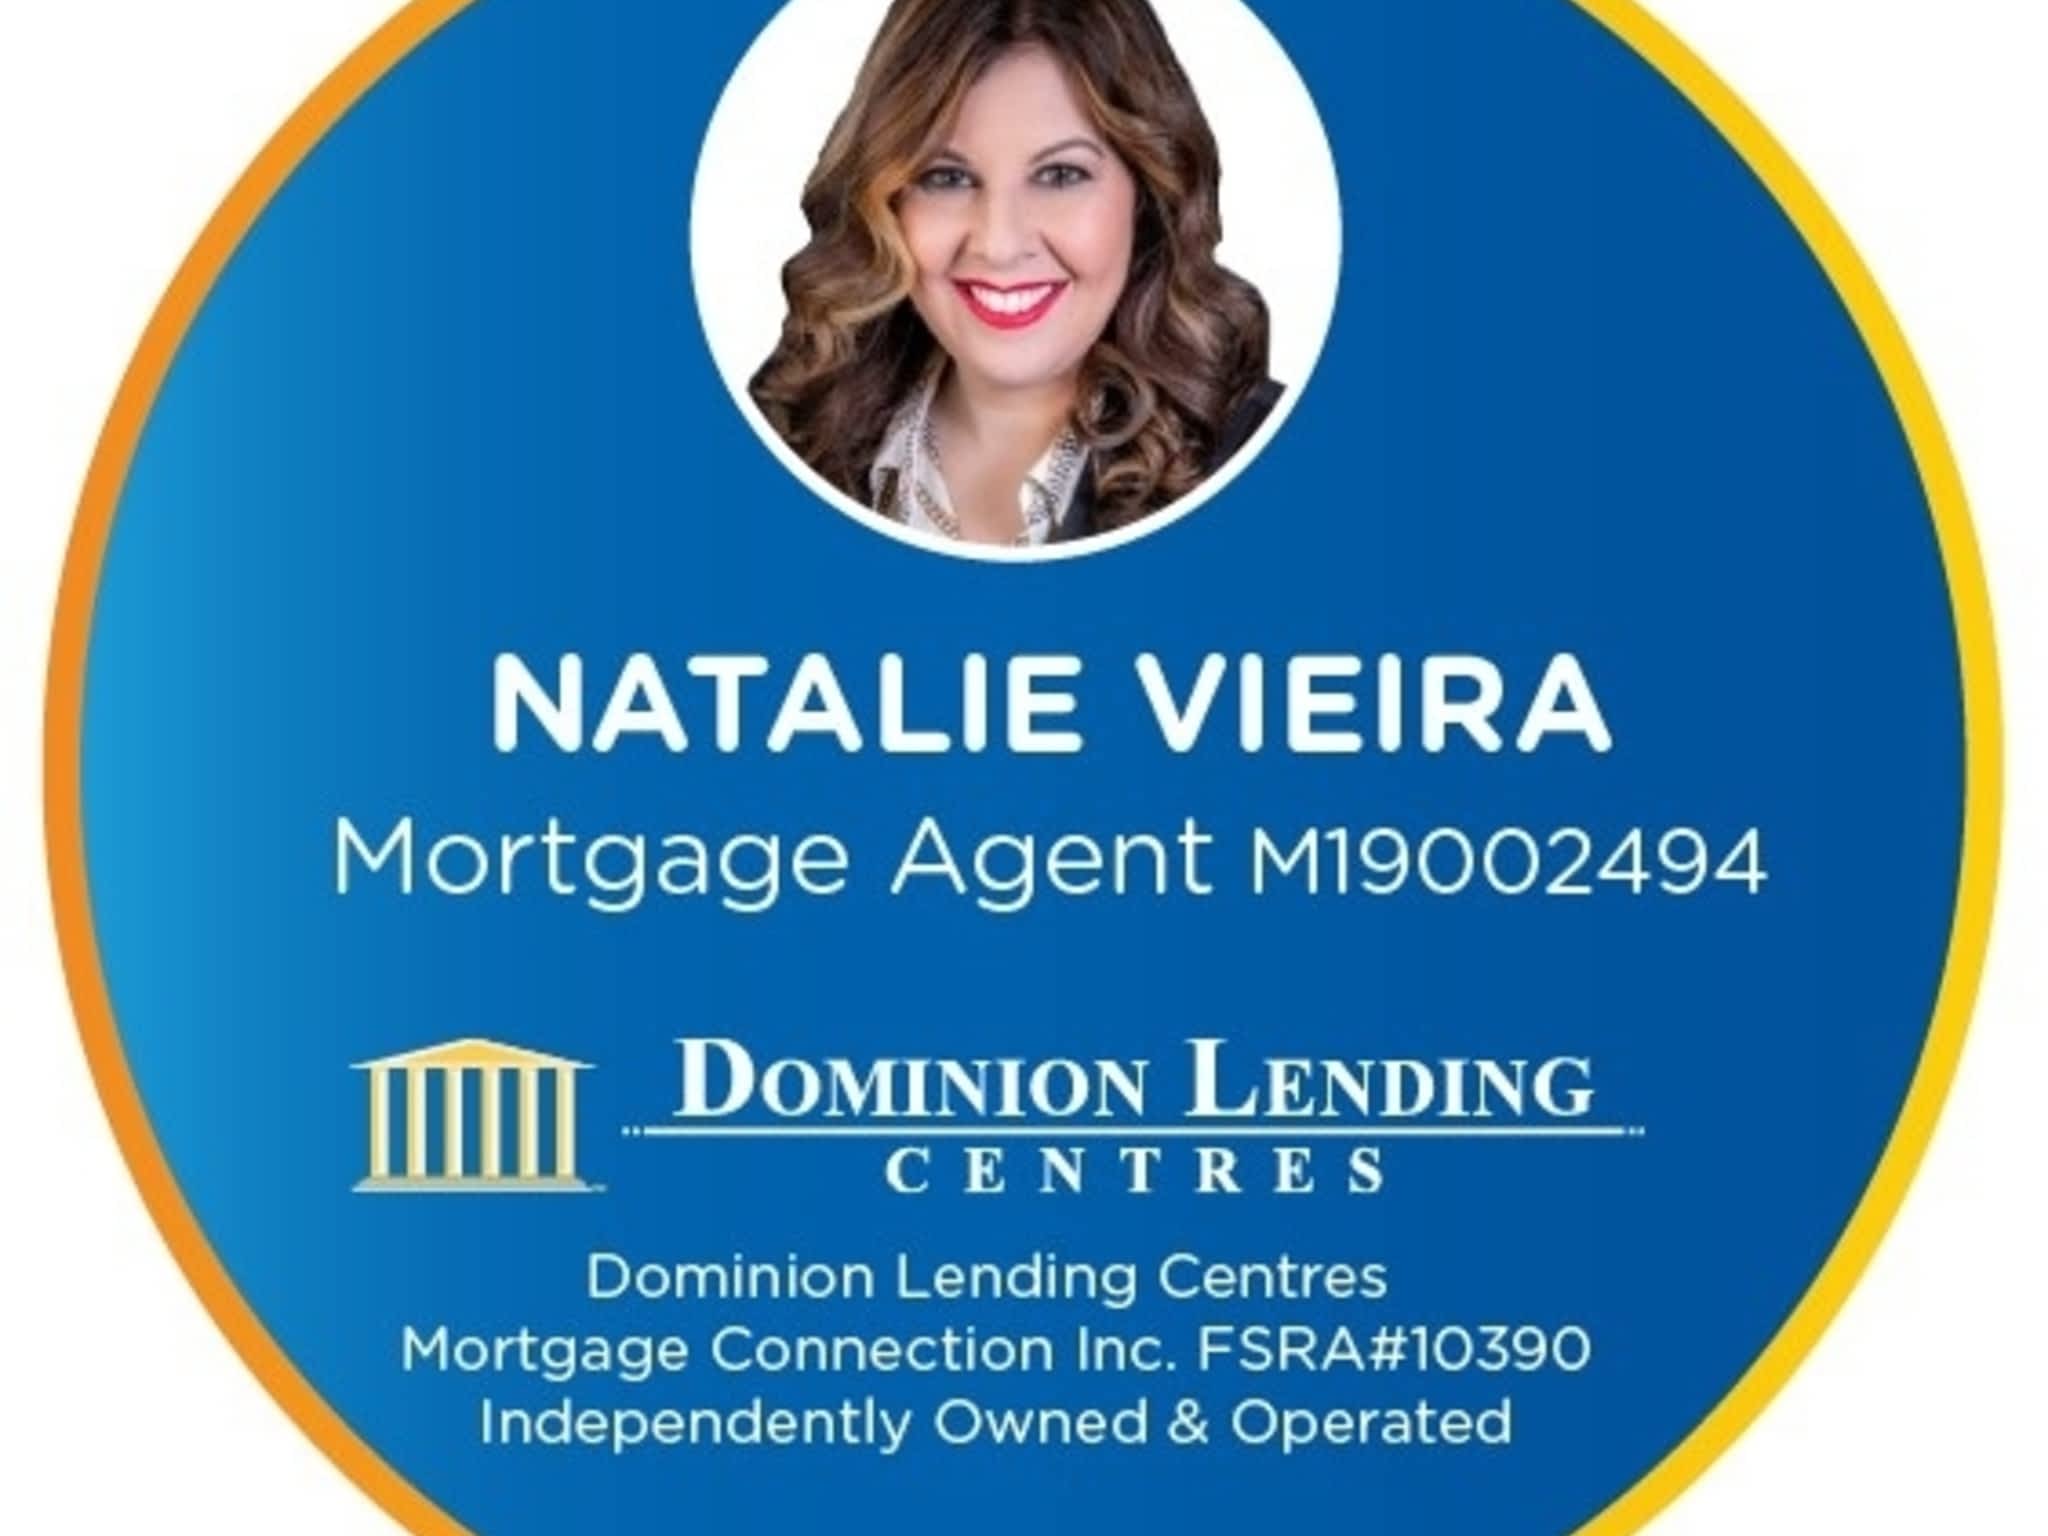 photo Natalie Vieira - Dominion Lending Centres Mortgage Connection Inc.